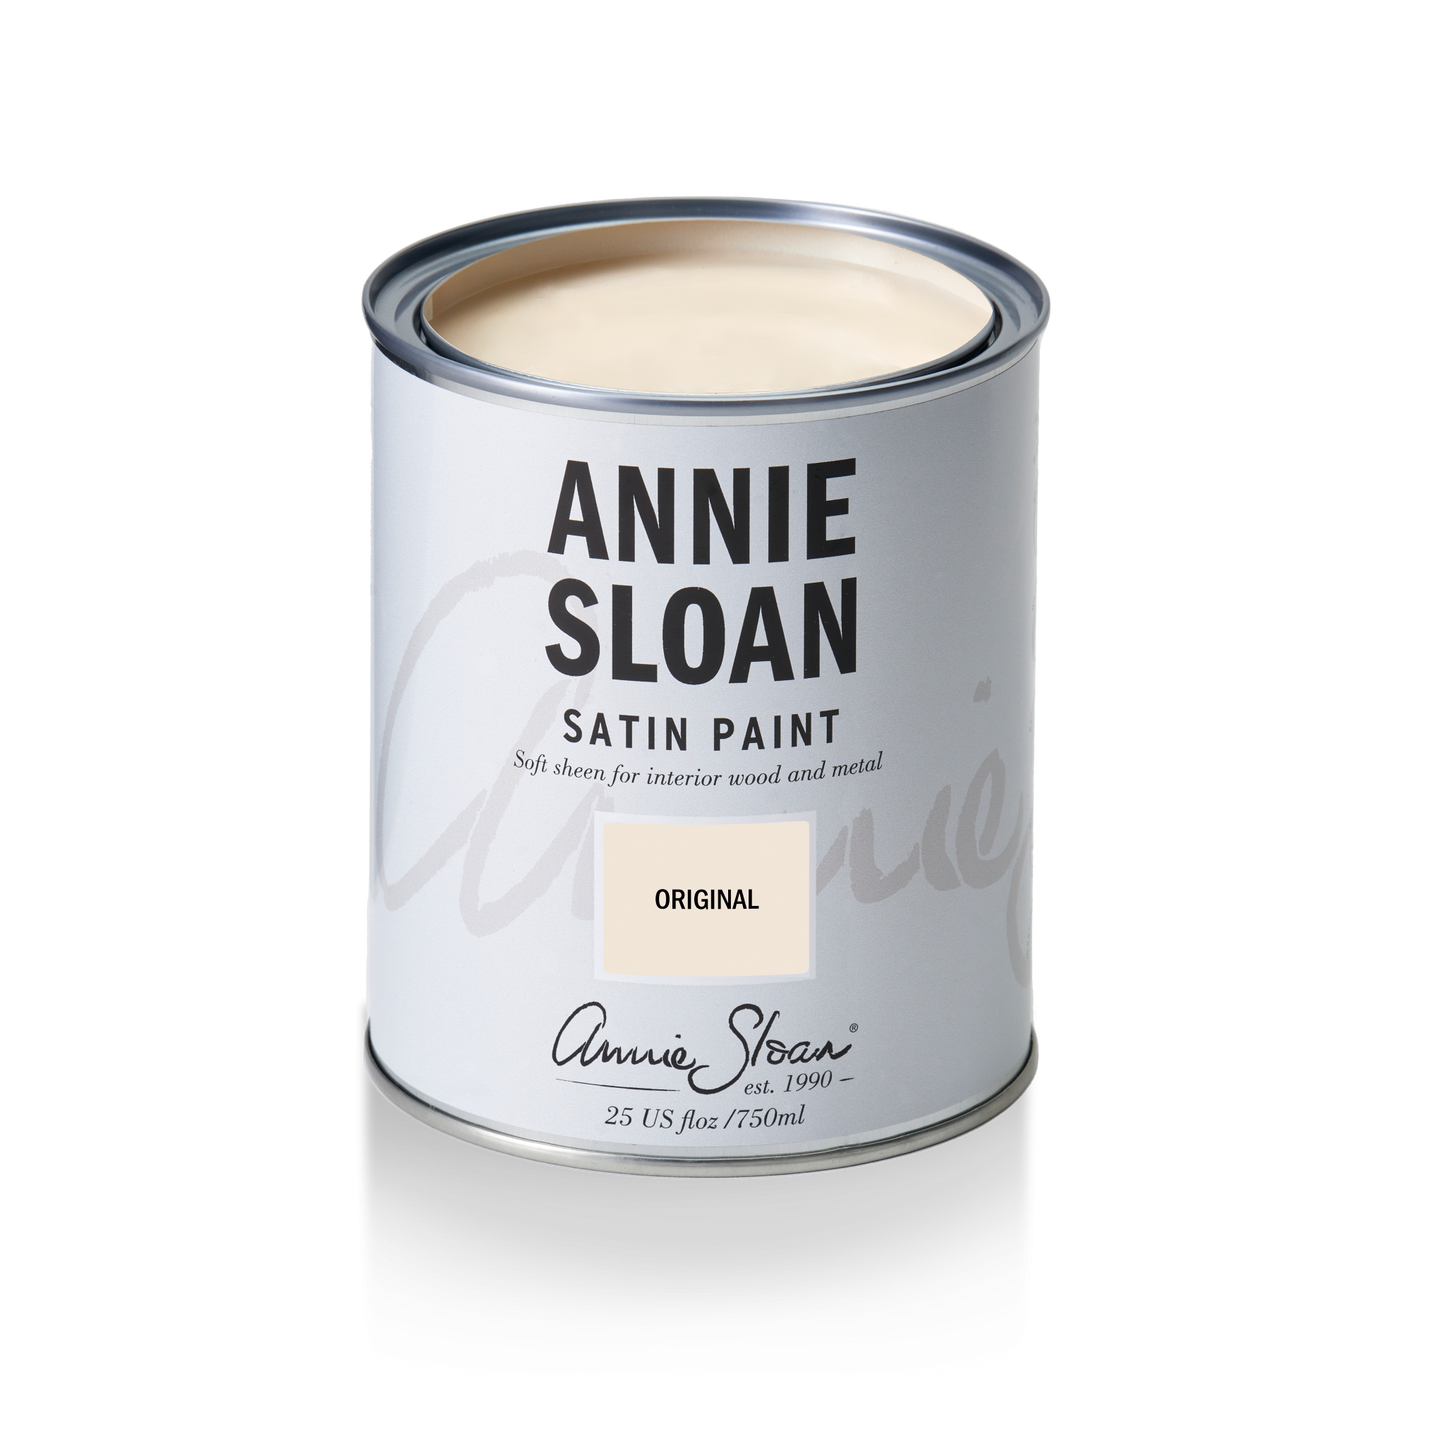 Annie Sloan Satin Paint Original, 750 ml Tin